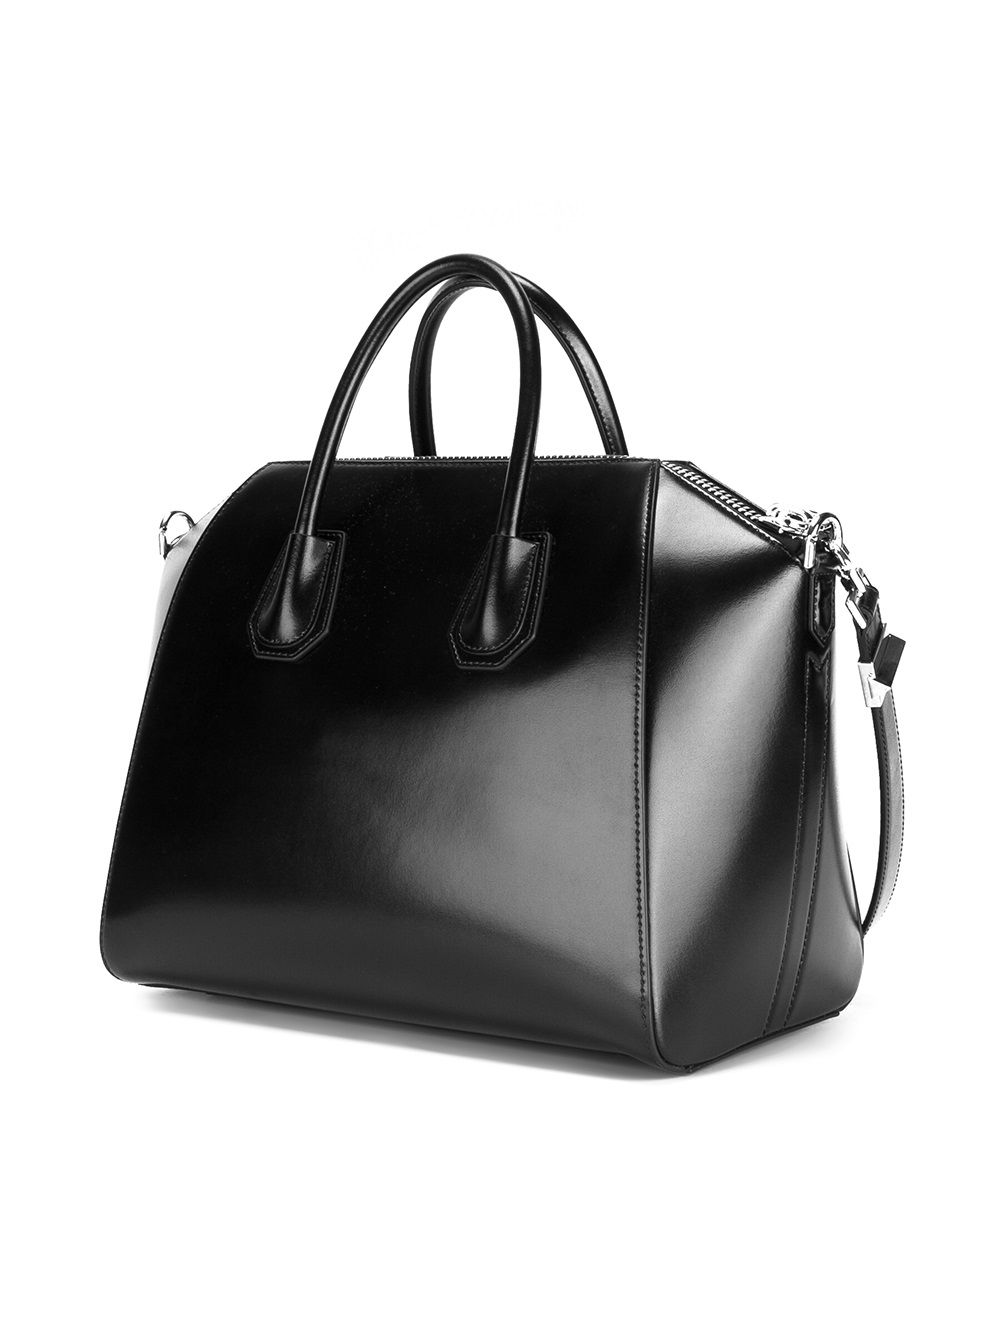 appliqué-logo tote bag Grün, Givenchy Antigona Handbag 379916